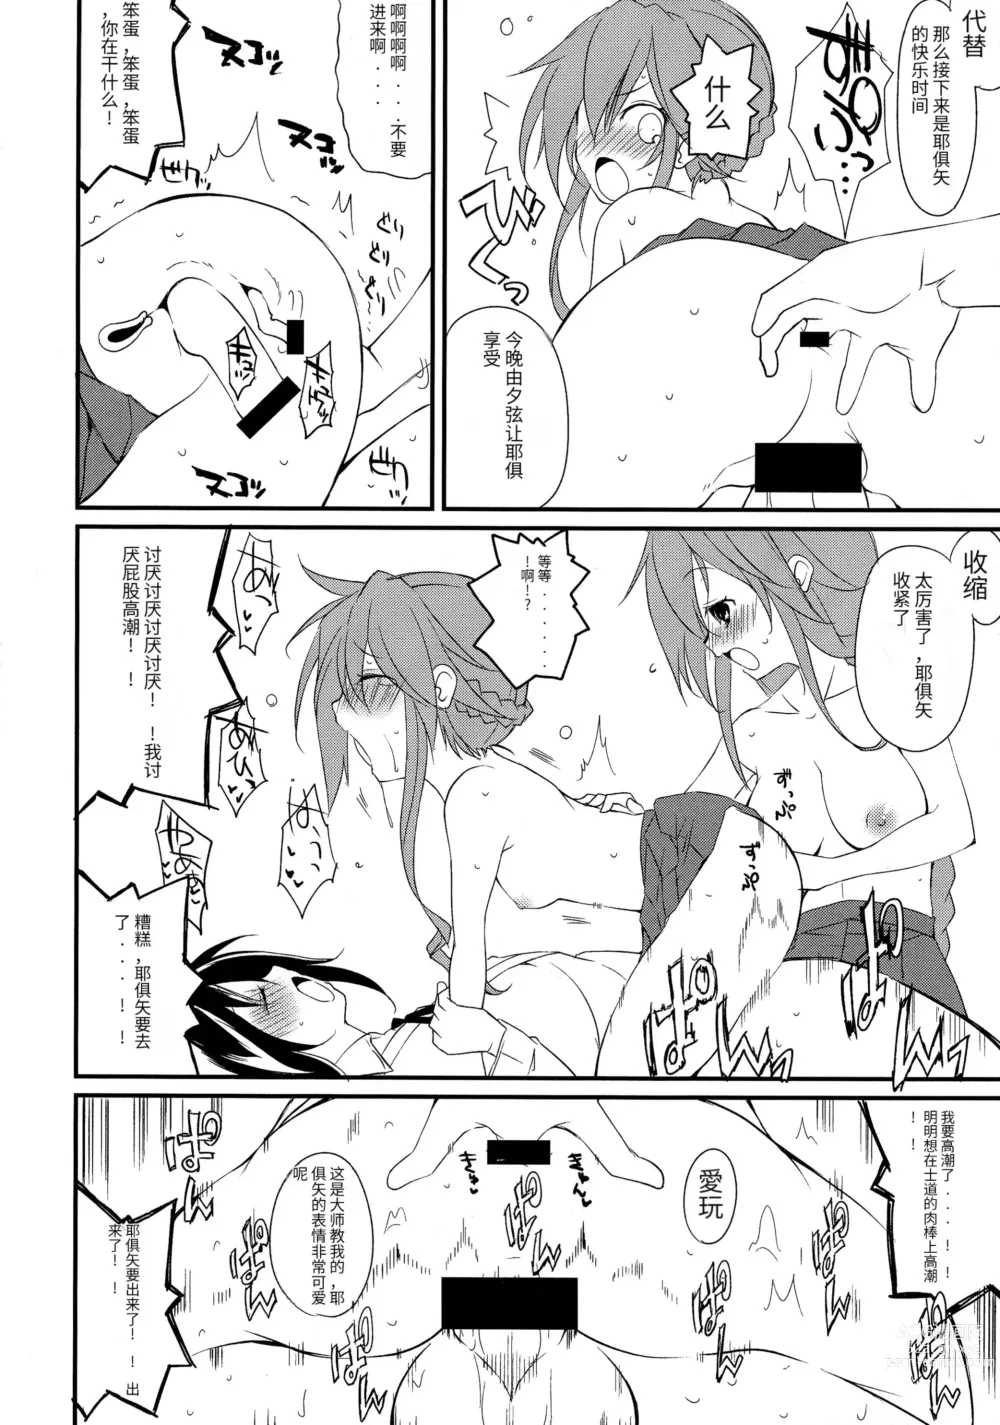 Page 12 of doujinshi Shiori-chan, Yamaidon After School